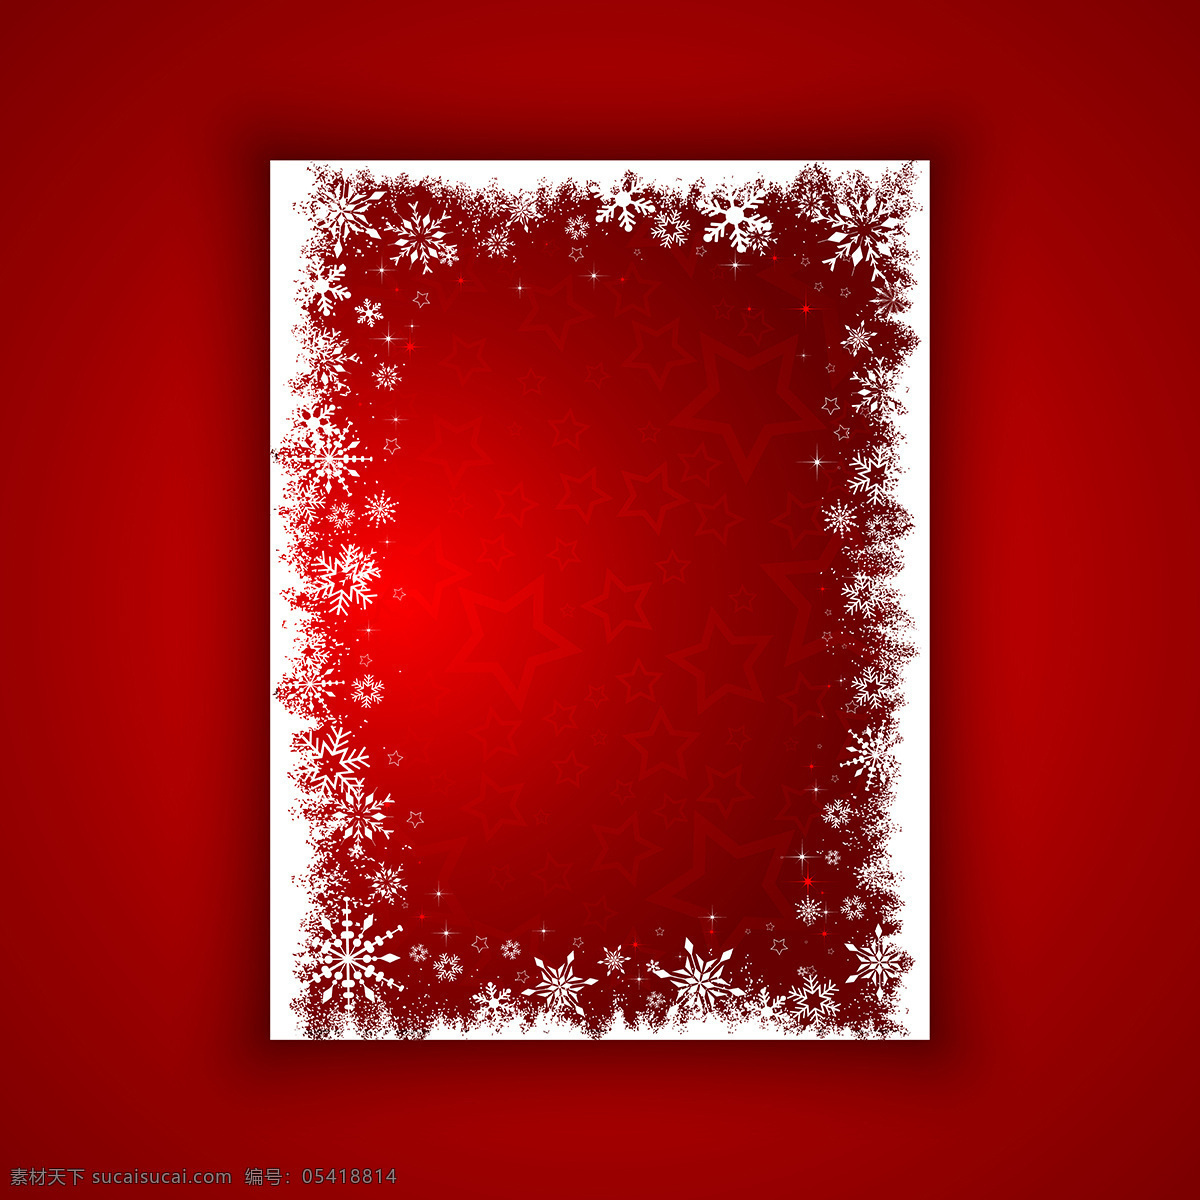 红色 背景 白色 框架 圣诞 架 圣诞节 圣诞快乐 冬天 雪花 装修 装饰 文化 冷 假期 季节 节日 十二月 给传统